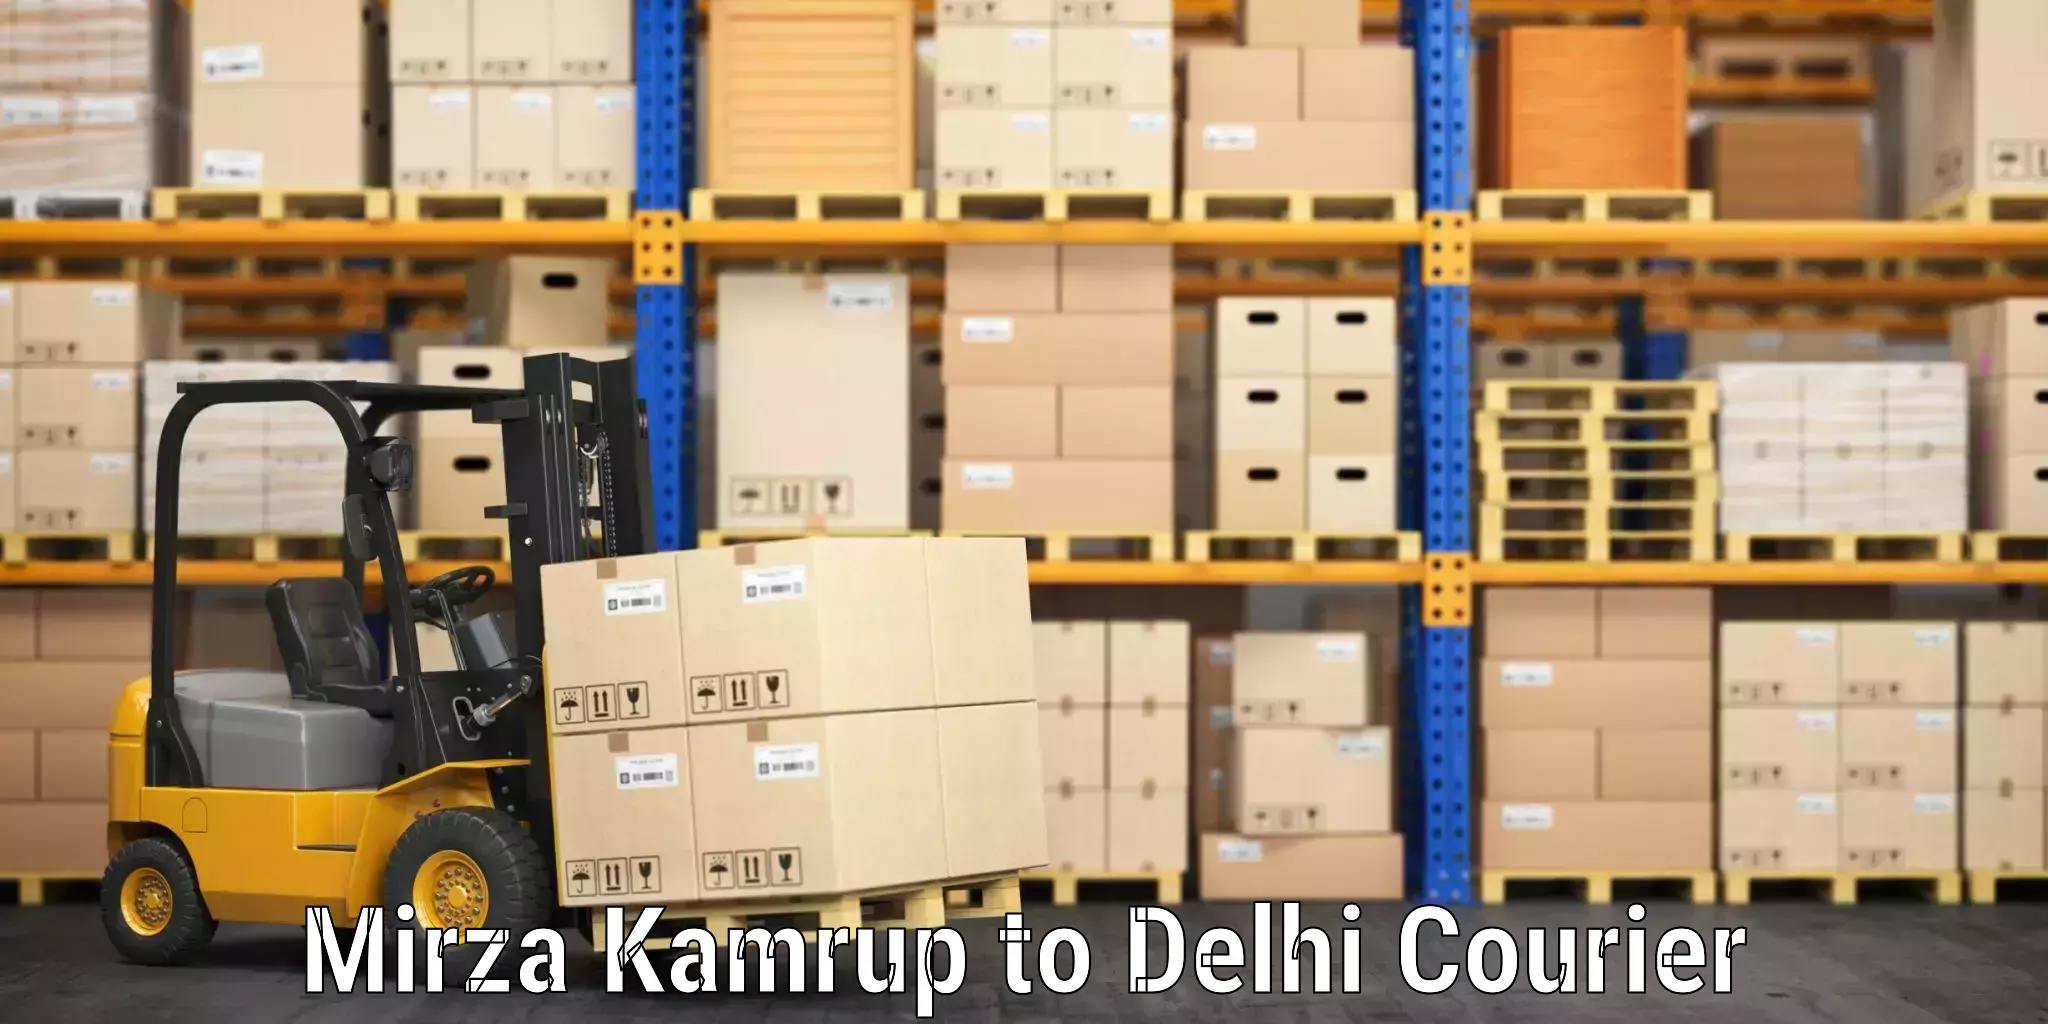 Baggage shipping service Mirza Kamrup to Delhi